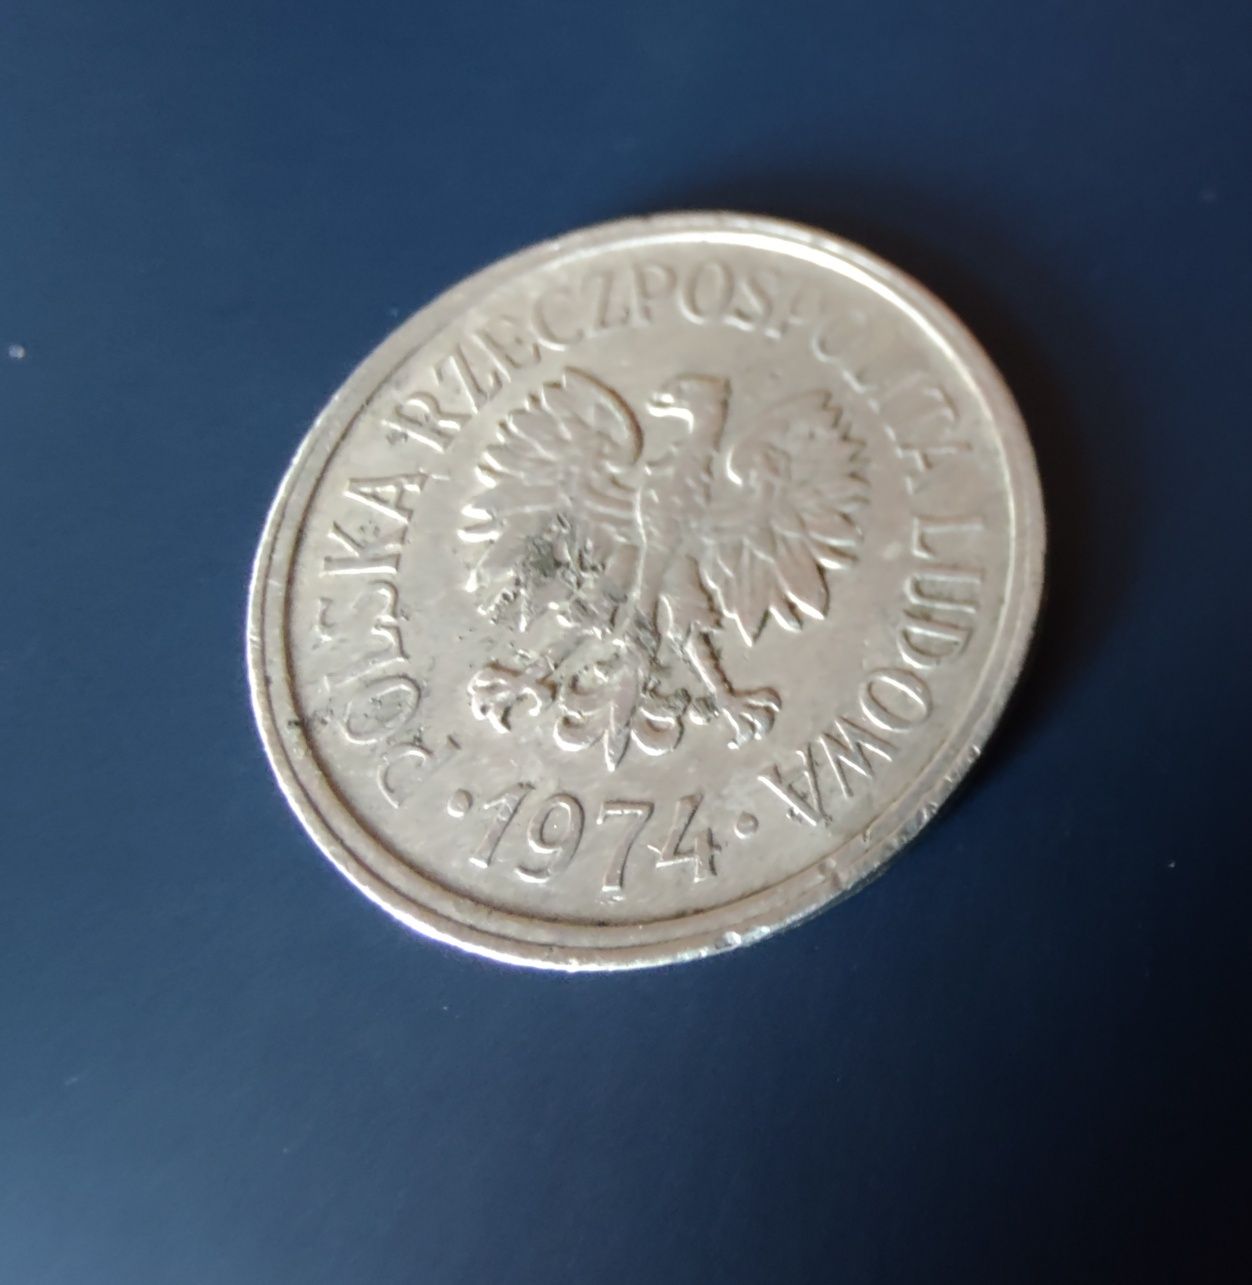 Moneta 10 groszy 1974 r. bez znaku mennicy, deskrut - numizmat